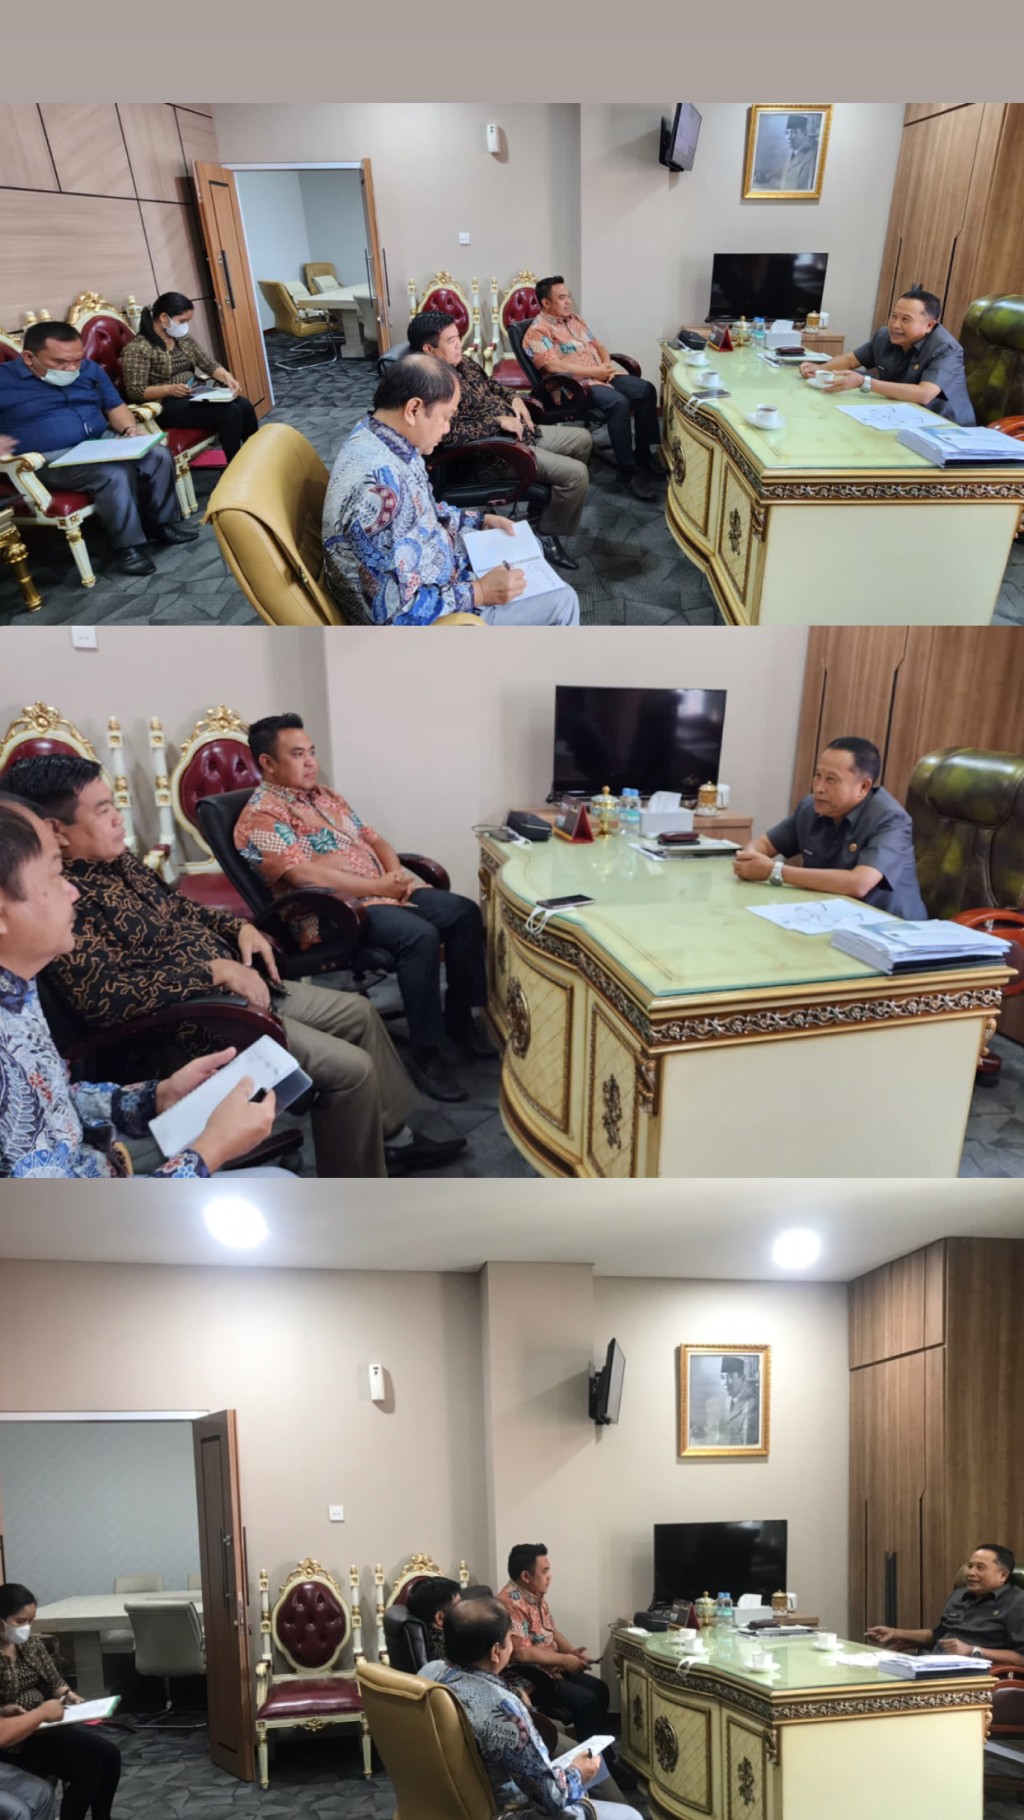 Ketua DPRD Kota Samarinda H. Sugiyono Menerima Kunjungan Kerja Dari DPRD Kabupaten Kutai Barat